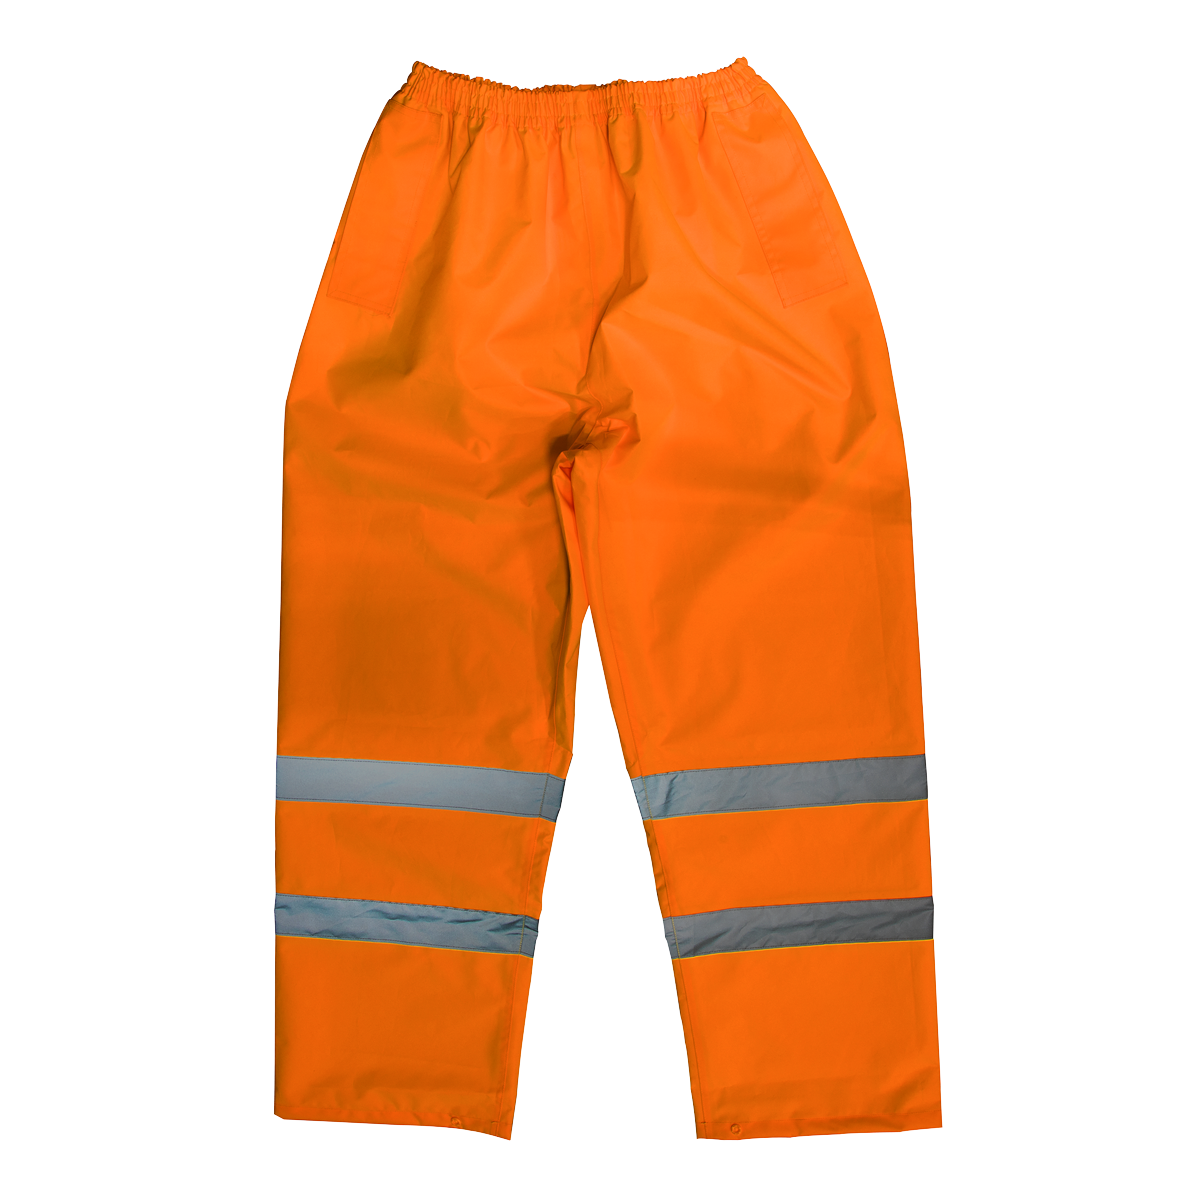 Sealey Hi-Vis Orange Waterproof Trousers - Medium 807MO